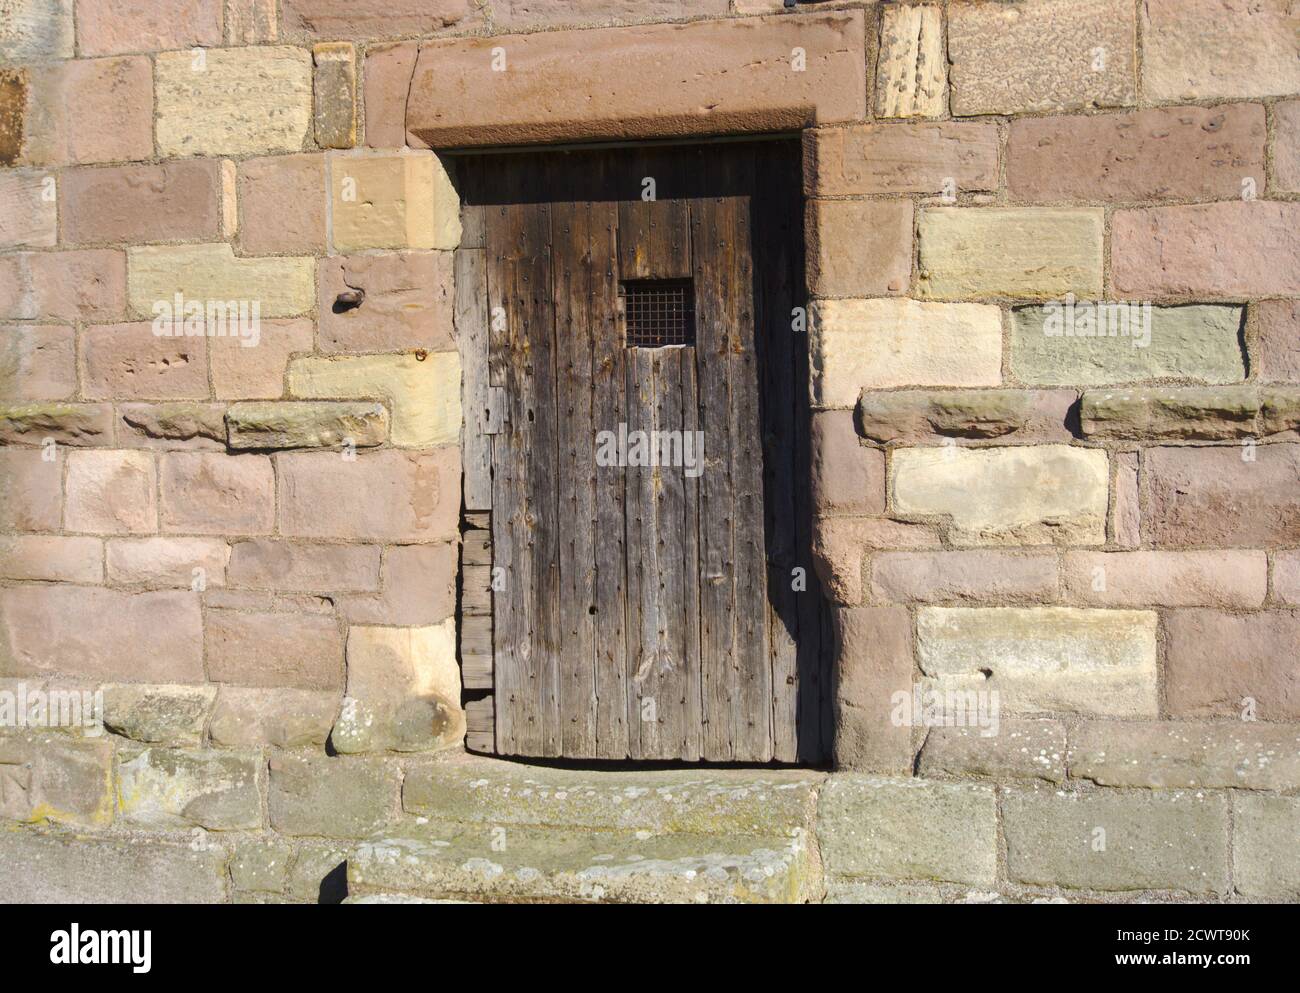 Porte latérale de l'église Ladykirk, construite sur ordre du roi James IV à Berwickshire, frontières écossaises, Royaume-Uni. Fait maintenant partie de l'Écomusée de Flodden 1513. Banque D'Images